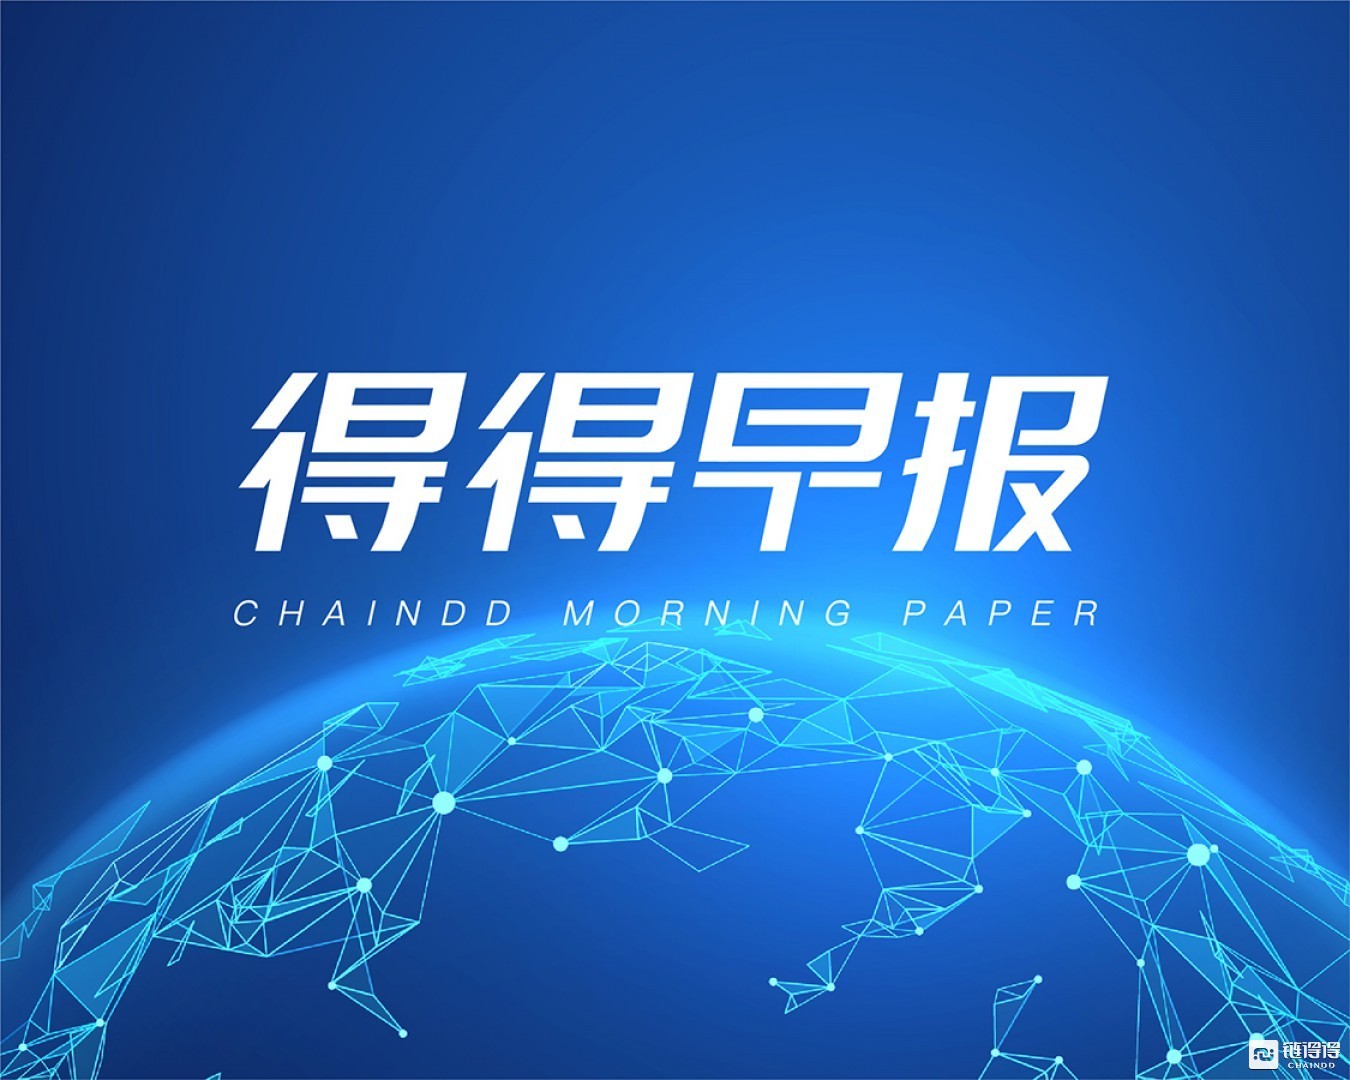 【链得得早报】北京互金协会警告区块链和虚拟货币名义的金融